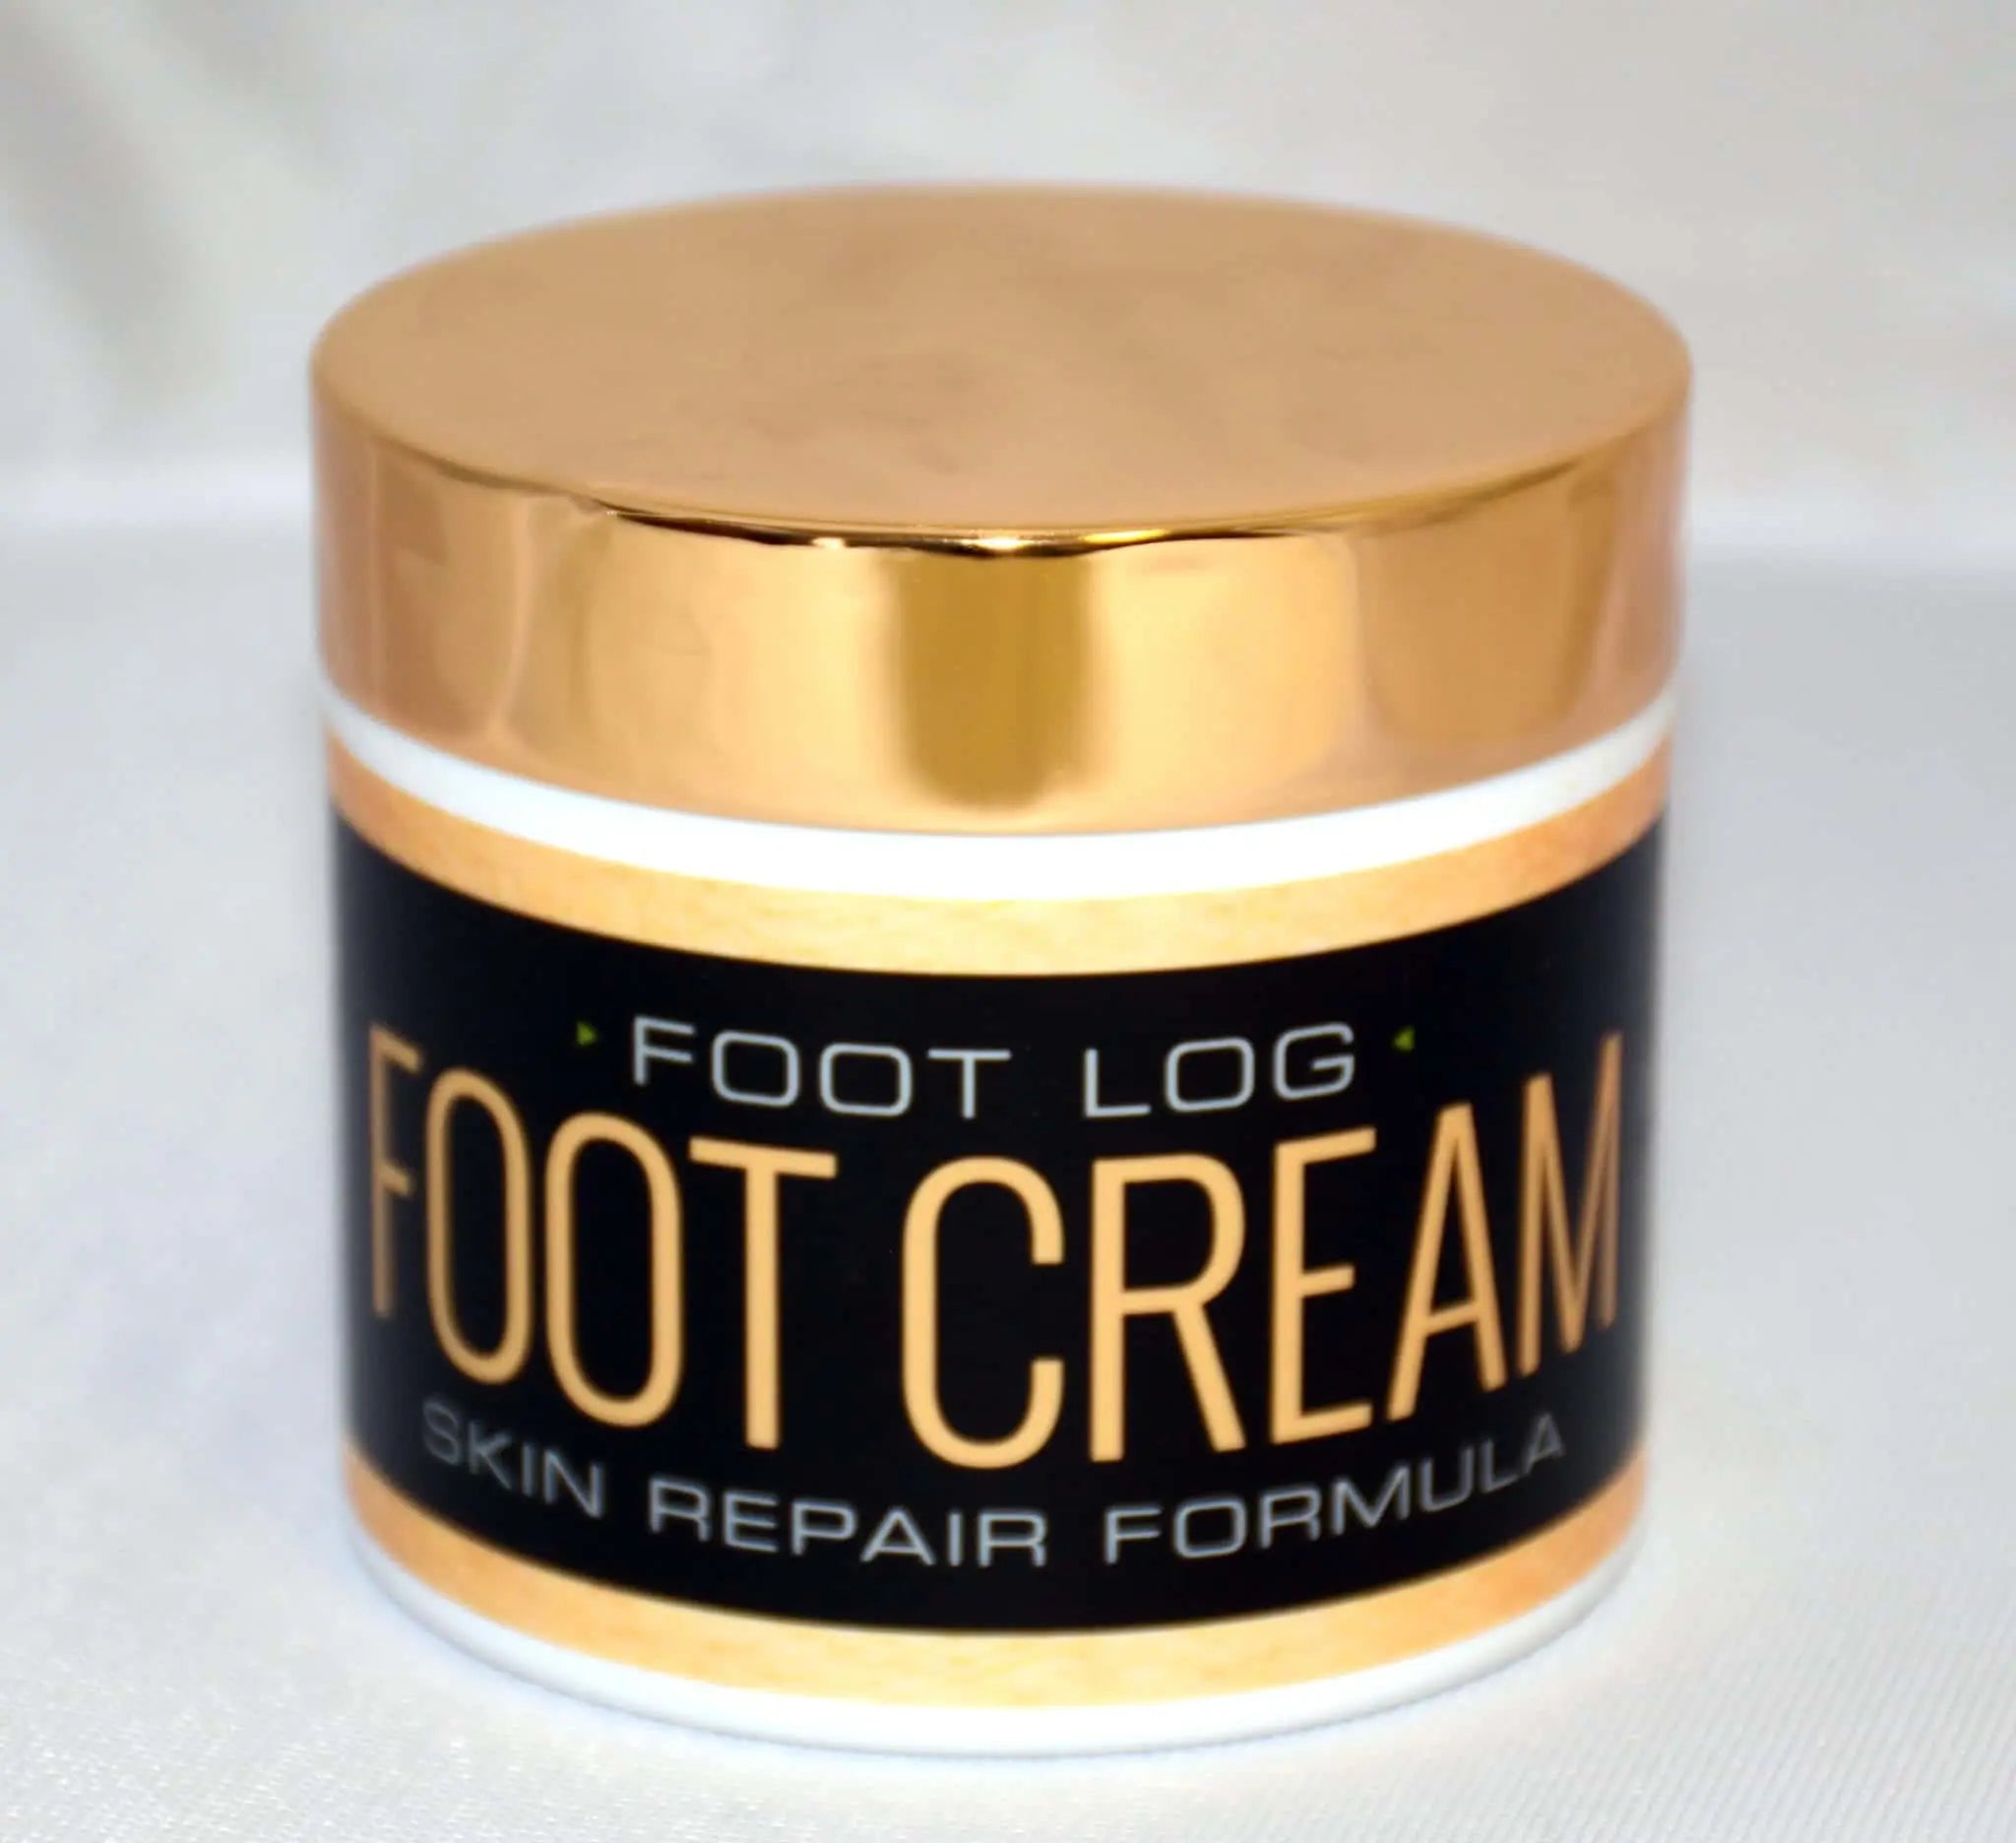 Skin repair formula foot cream